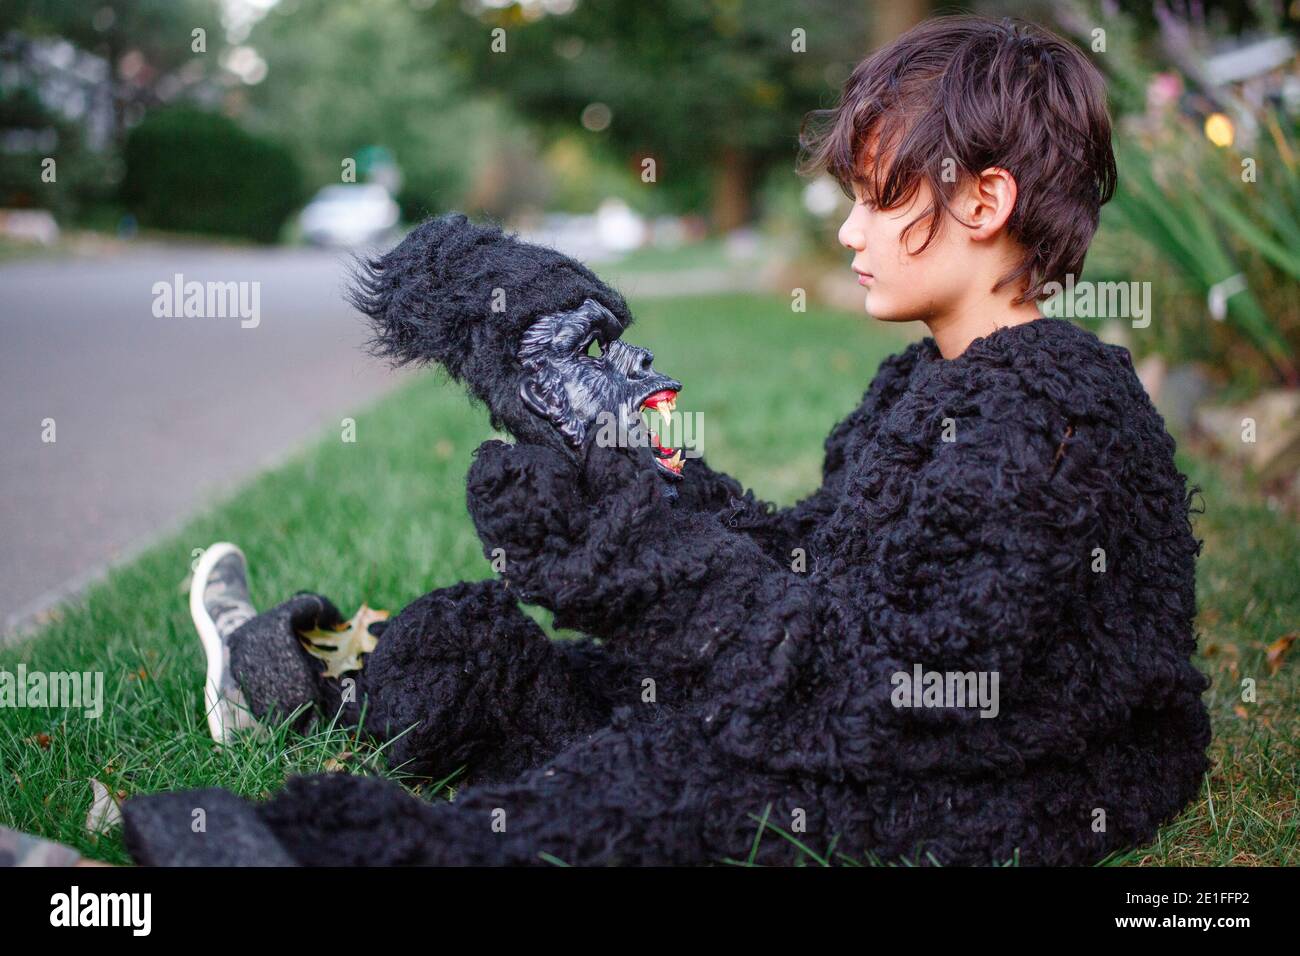 Ein Junge sitzt im Gras im Gorilla Anzug und schaut zu Gruselige Gorilla  Maske Stockfotografie - Alamy